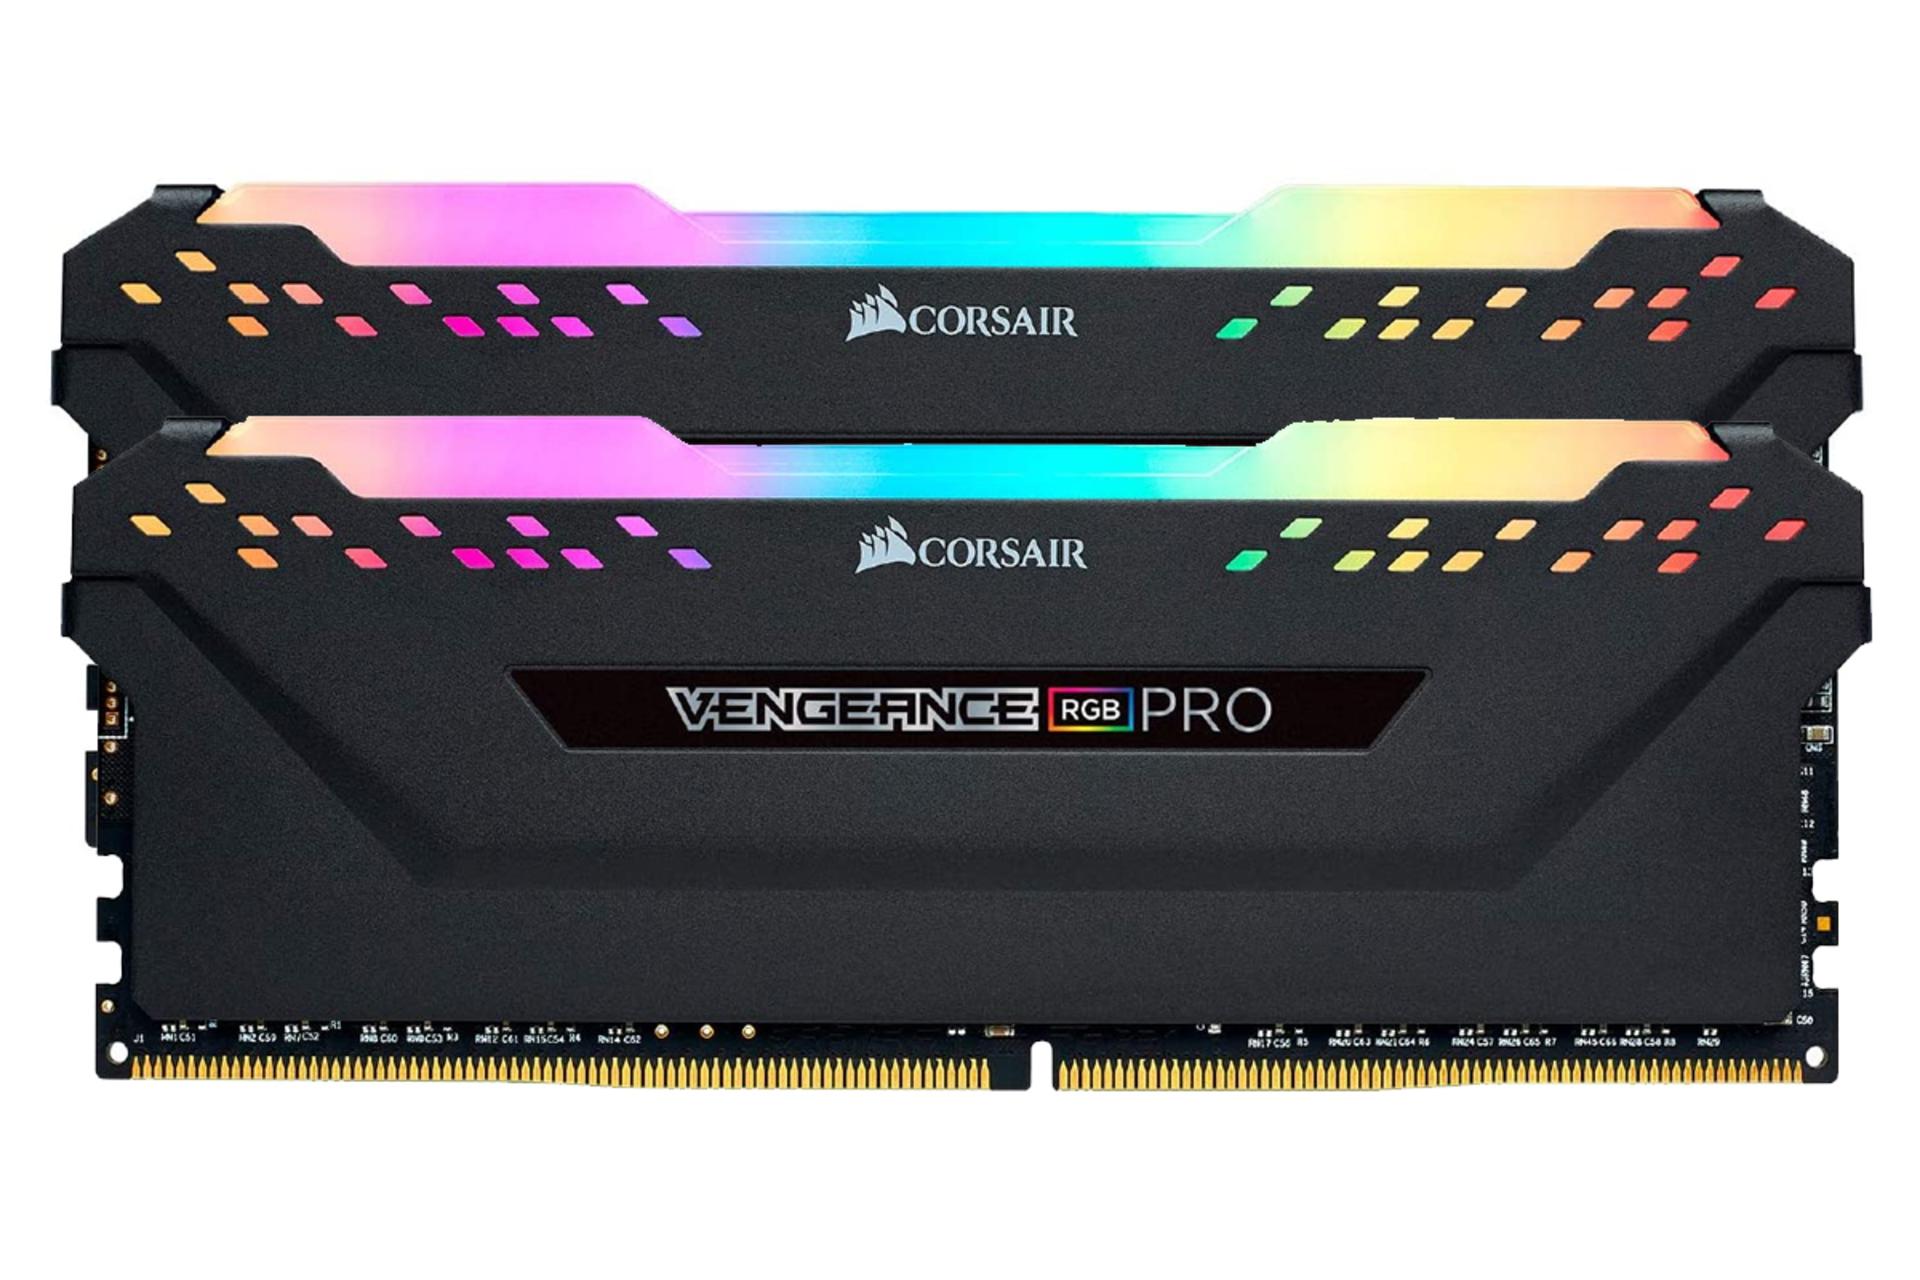 نمای جلو رم کورسیر VENGEANCE RGB PRO ظرفیت 32 گیگابایت (2x16) از نوع DDR4-3600